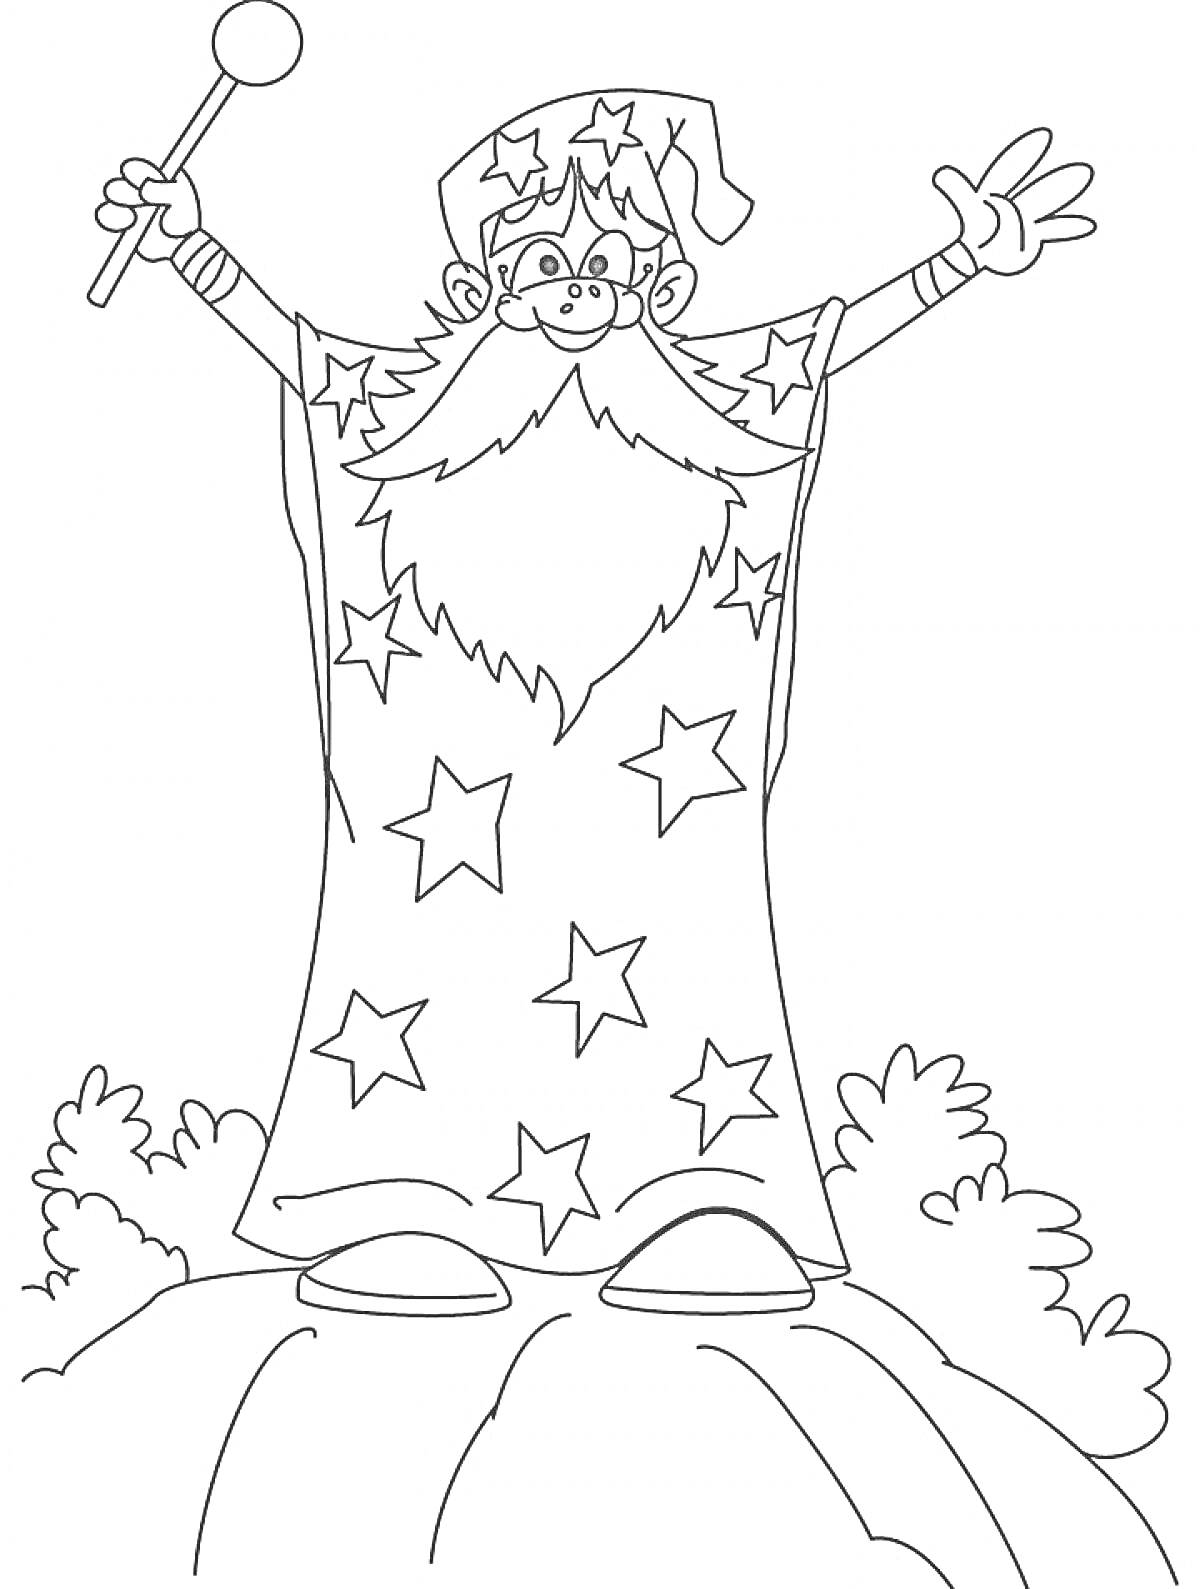 Раскраска Волшебник со звездной мантией и волшебной палочкой стоит на вершине скалы среди кустов